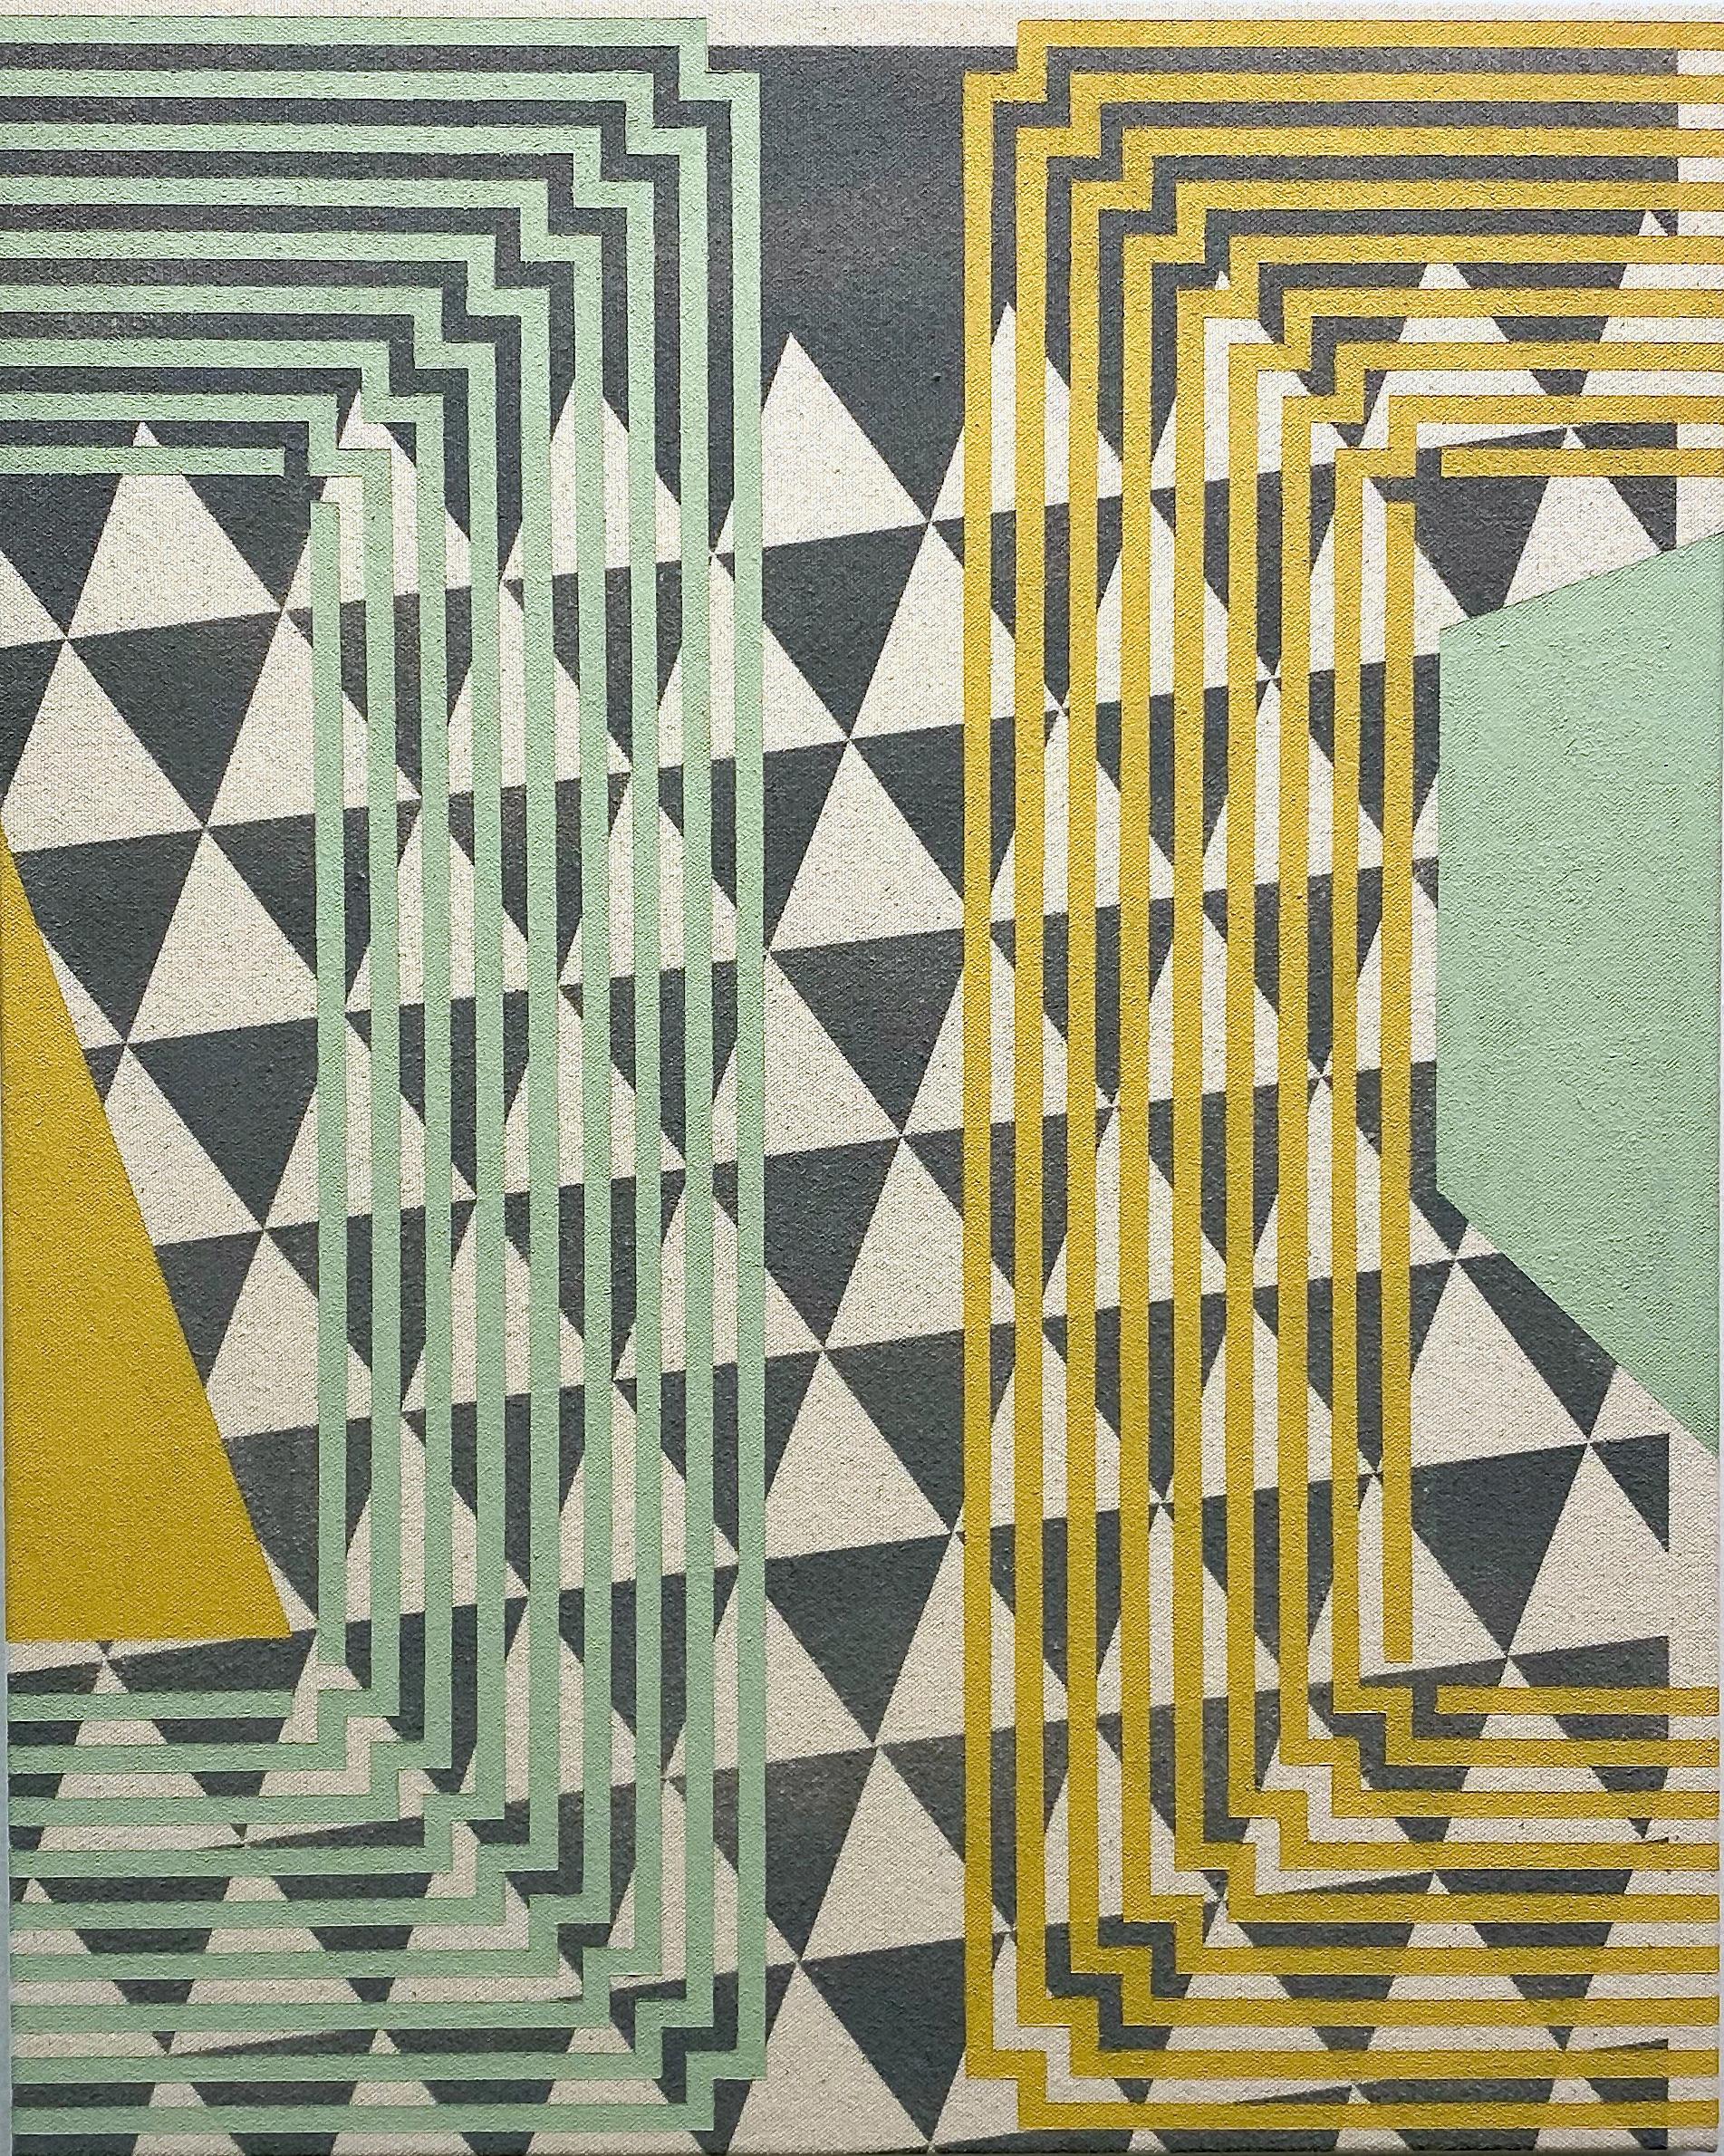 DIFFERENCE BETWEEN - Abstrakte geometrische Abstraktion, Mintgrn, Gelb, Grau auf Leinwand 